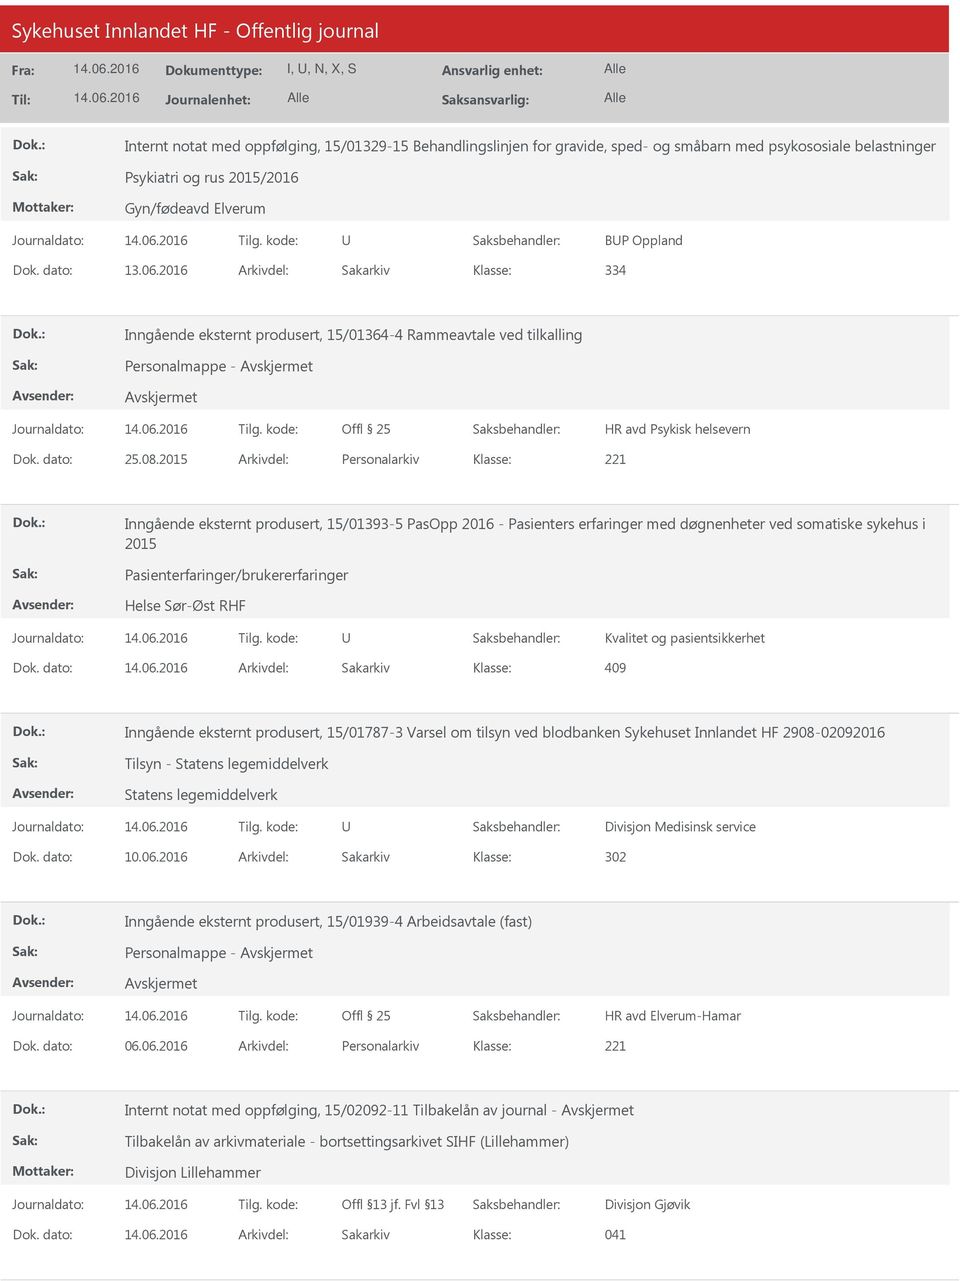 2015 Arkivdel: Personalarkiv Inngående eksternt produsert, 15/01393-5 PasOpp 2016 - Pasienters erfaringer med døgnenheter ved somatiske sykehus i 2015 Pasienterfaringer/brukererfaringer Helse Sør-Øst